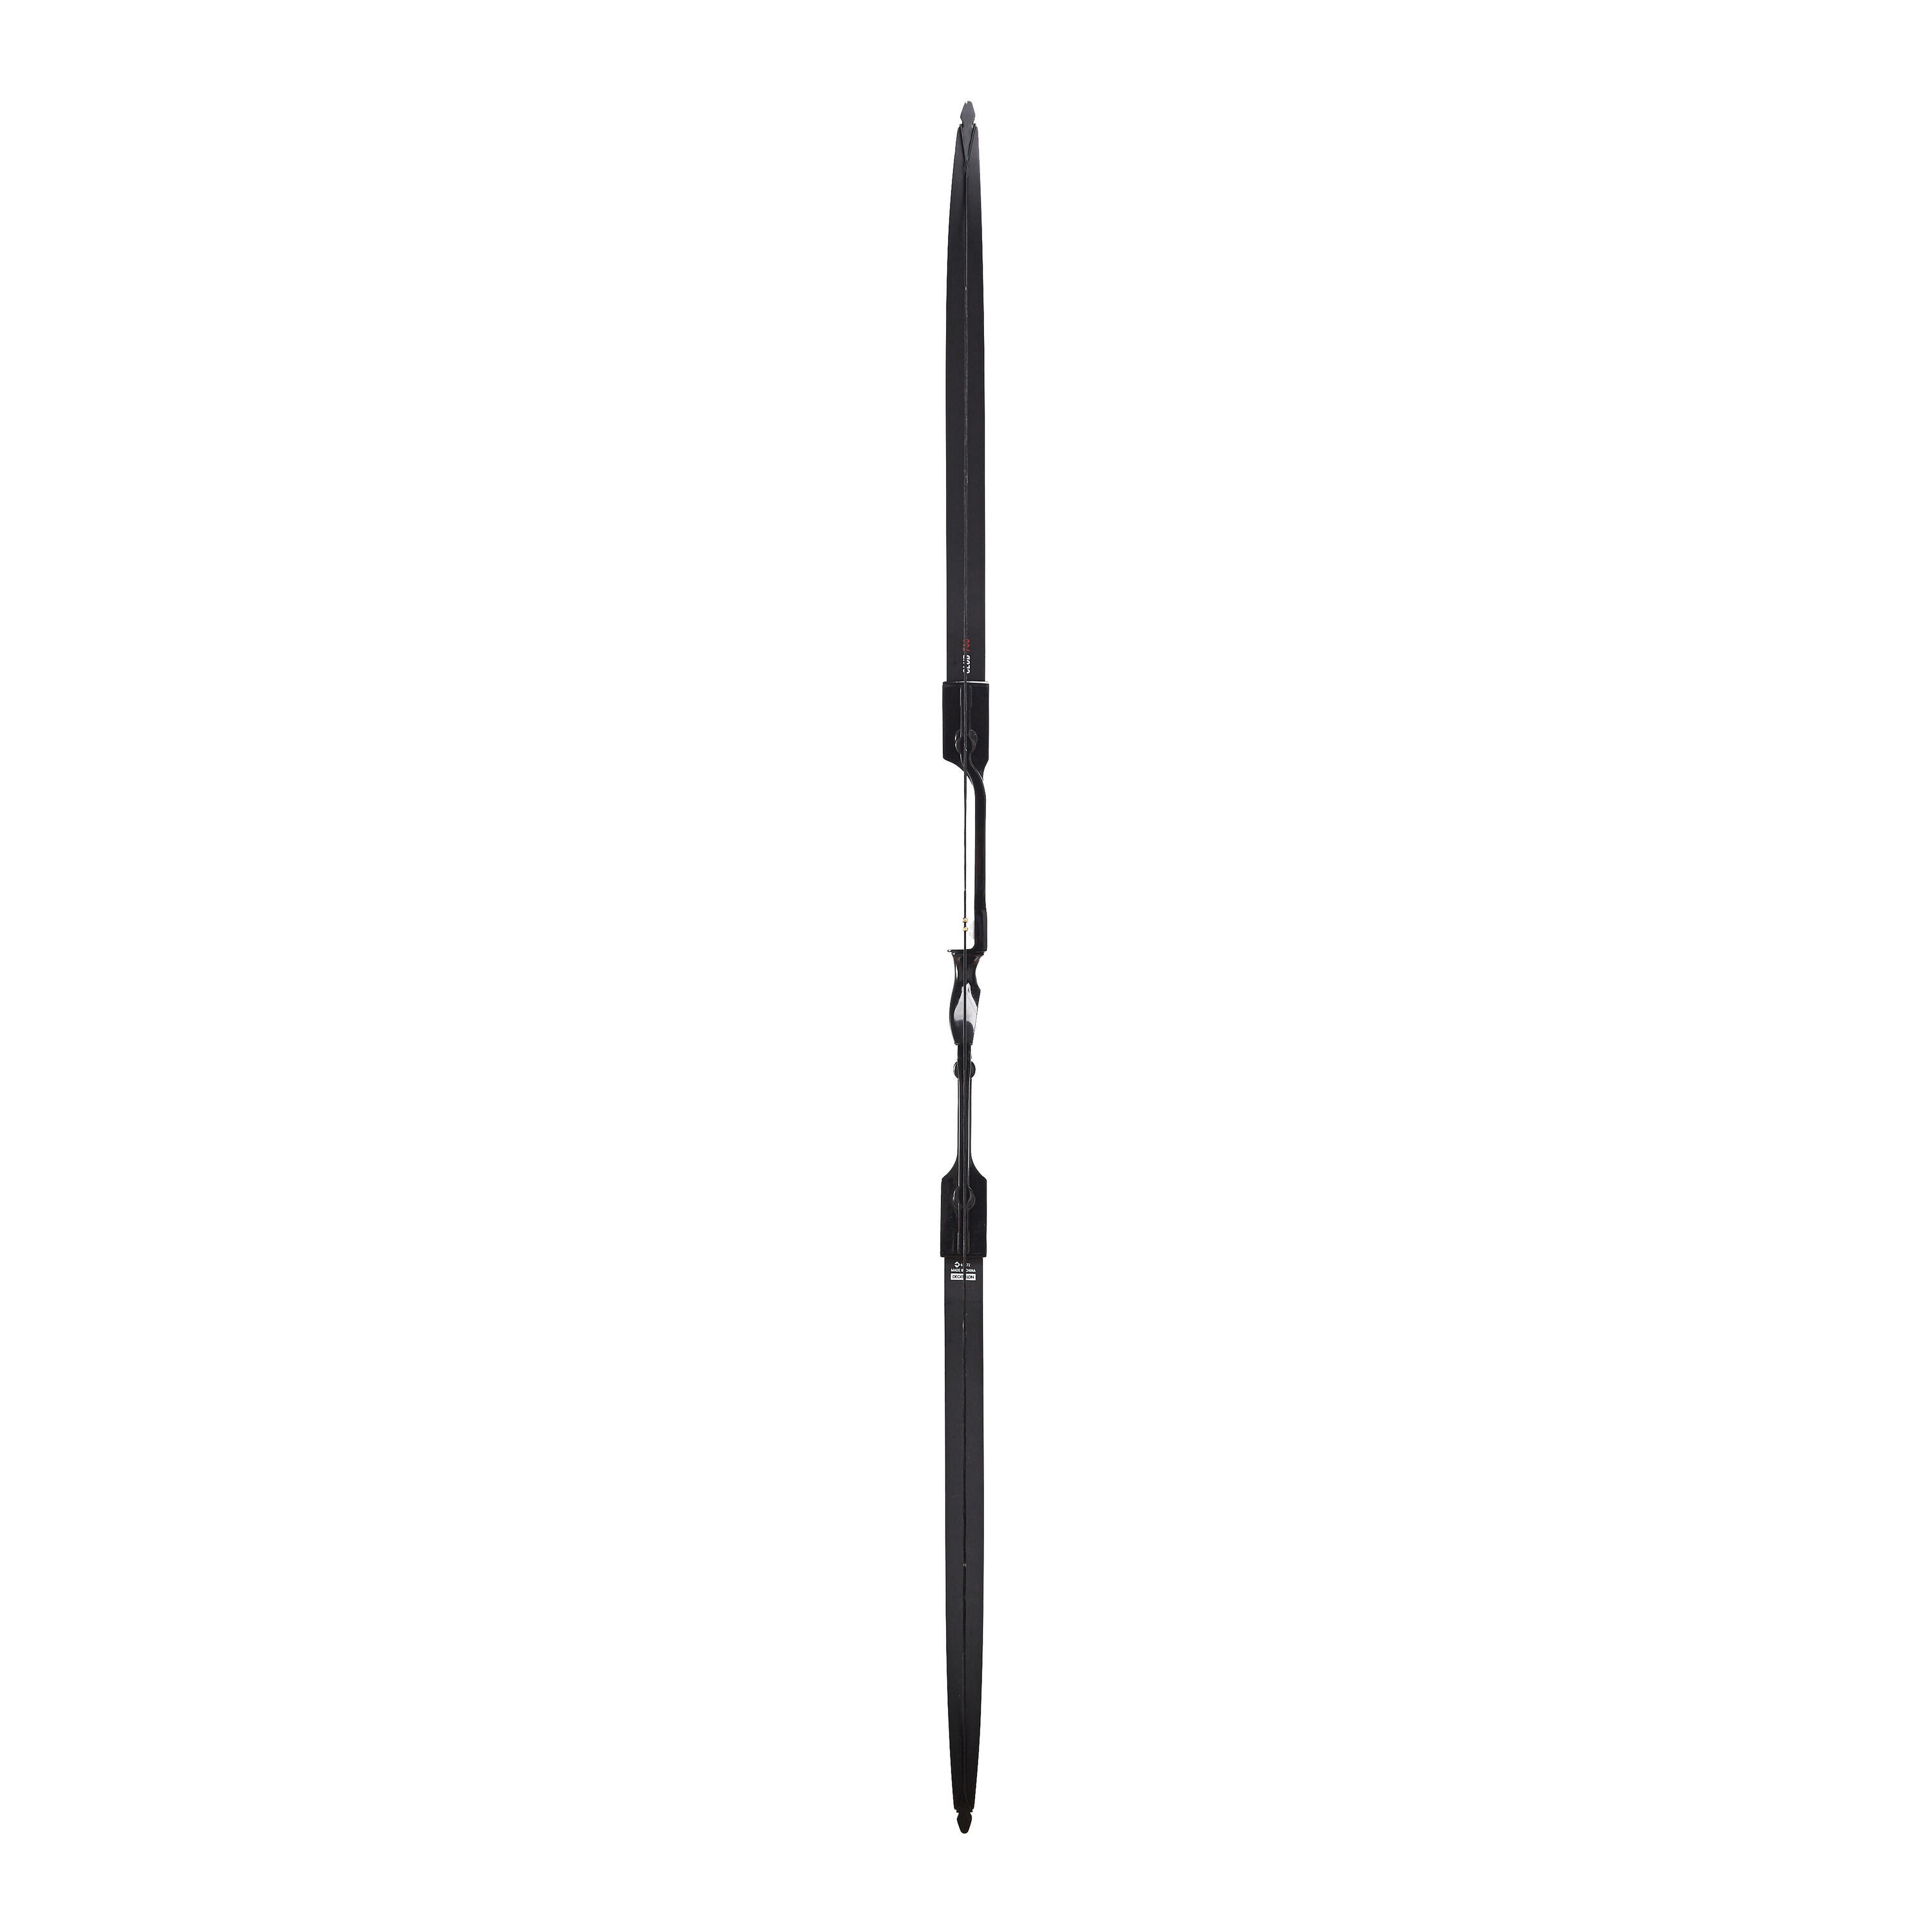 Right Hander Archery Bow Club 700 FB 5/16